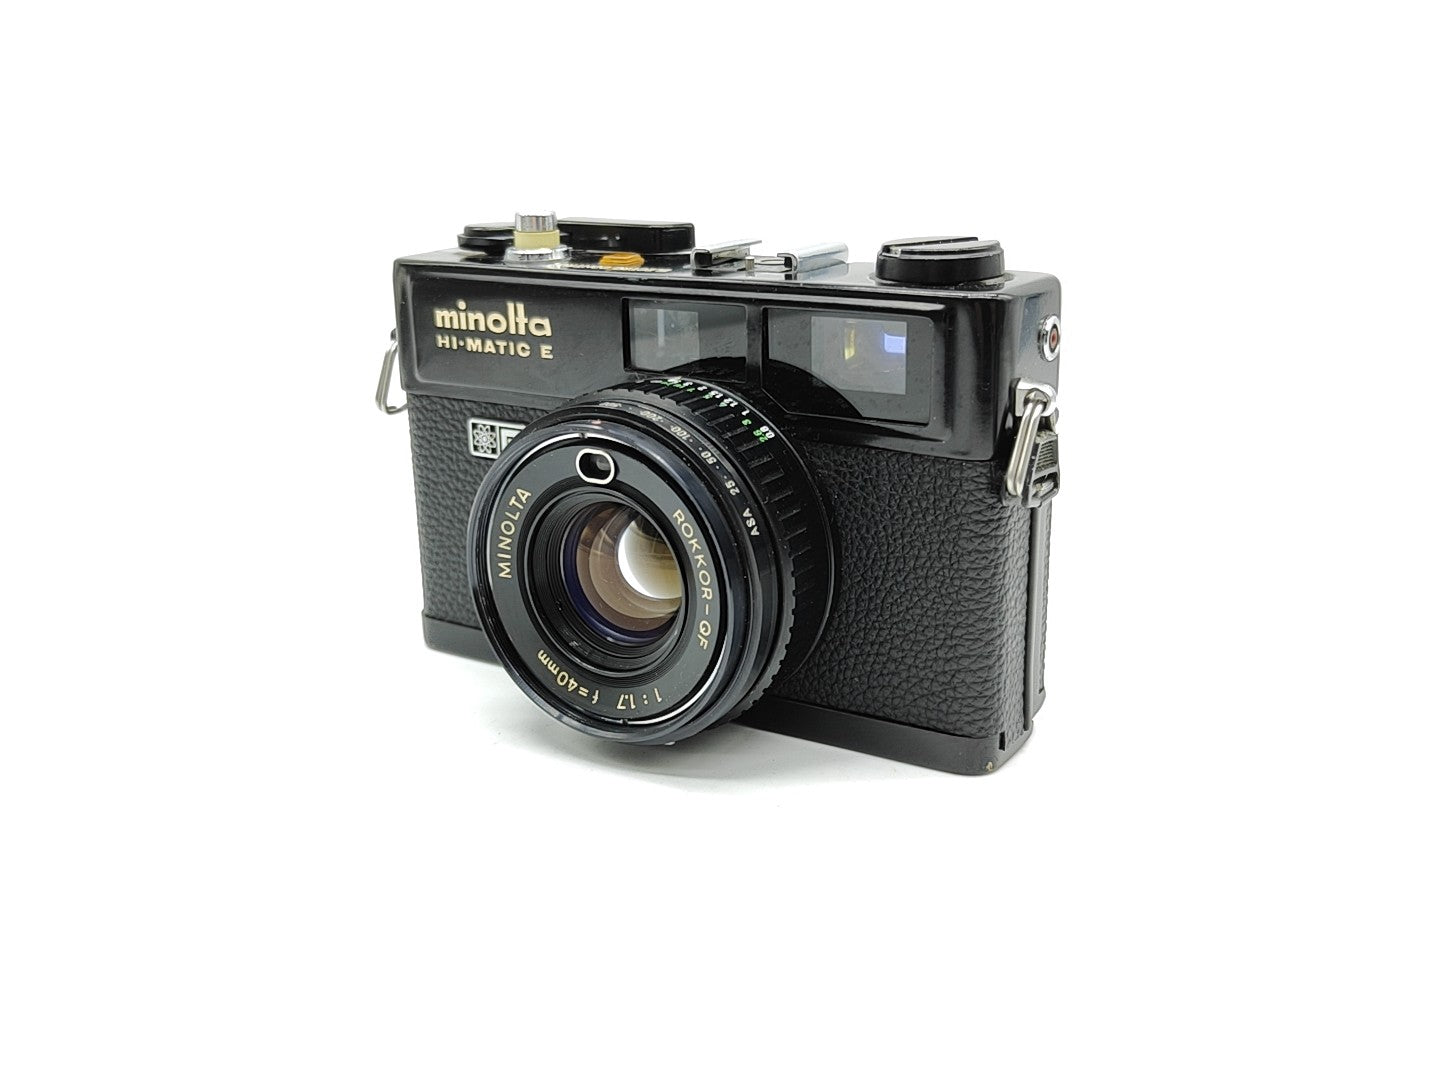 Minolta HiMatic E rangefinder camera (black)